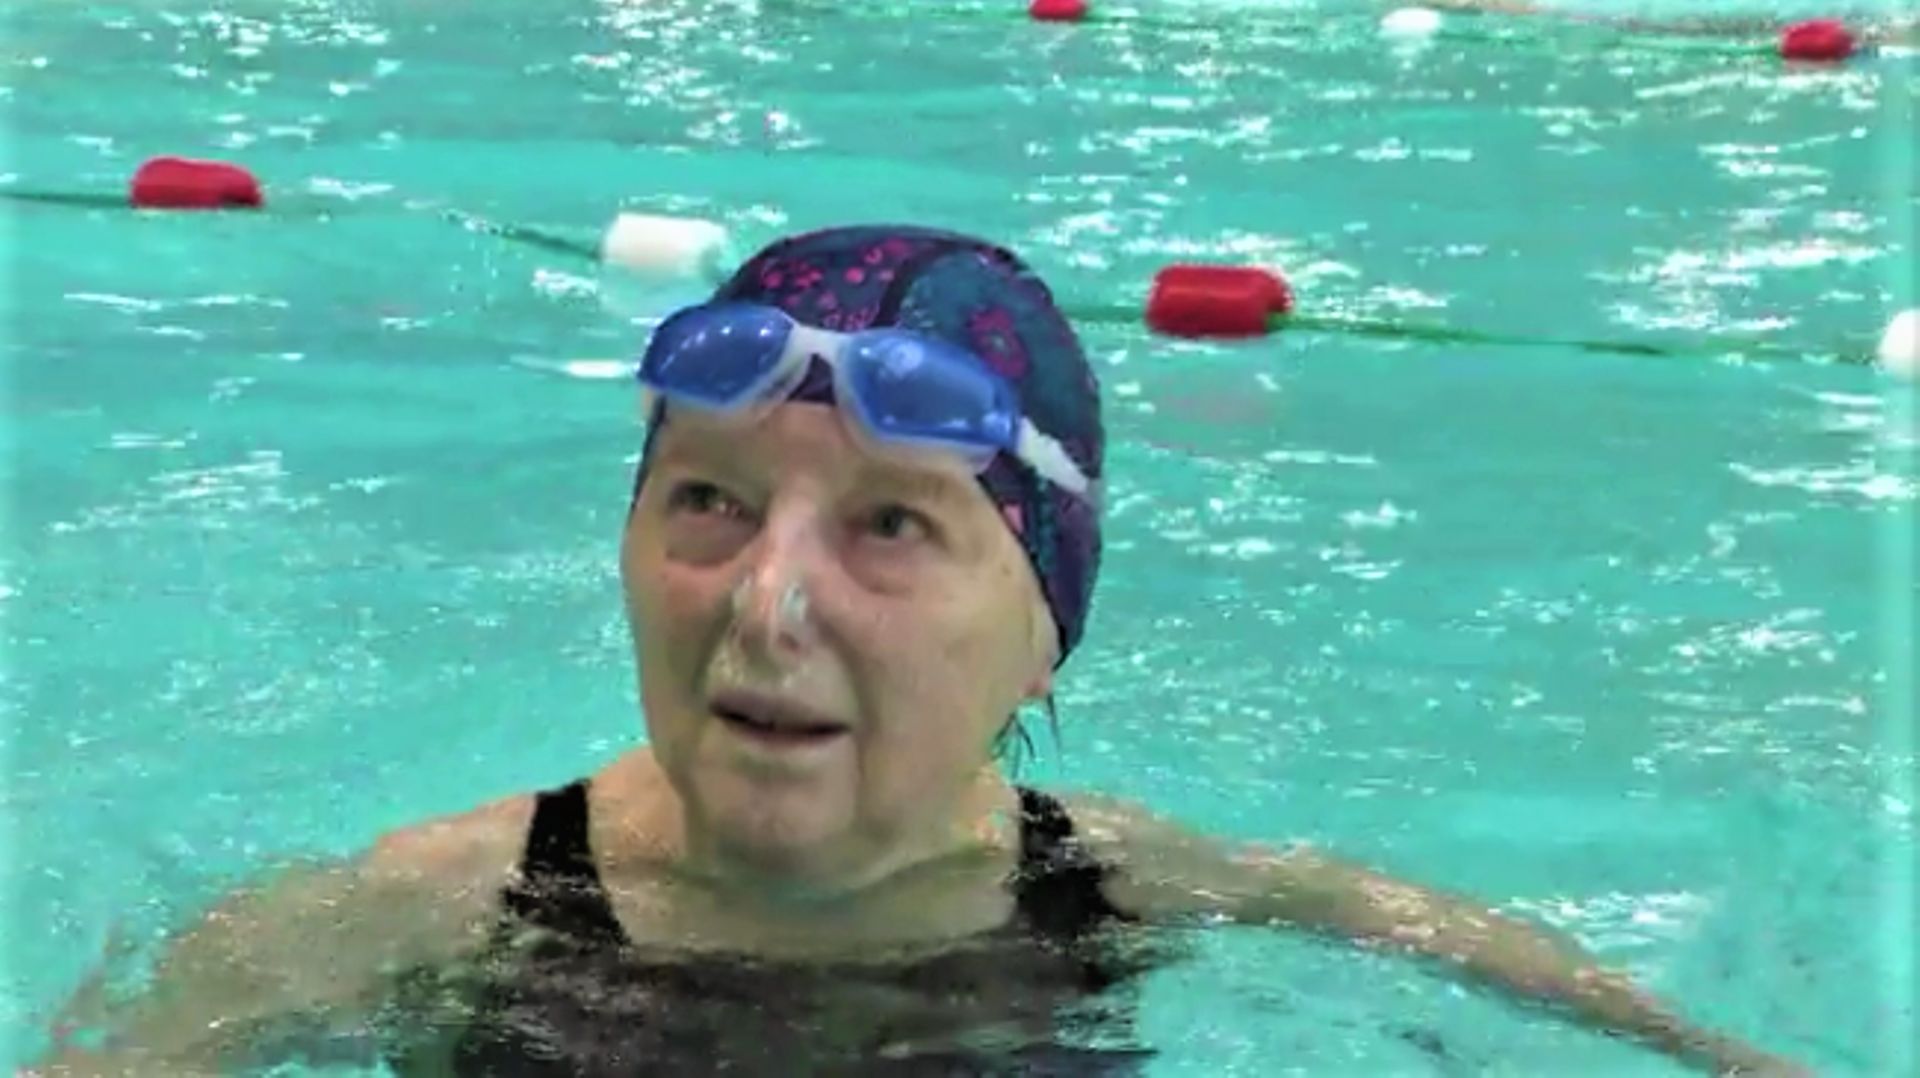 "Je vais à la piscine tous les jours depuis 37 ans" : portrait d'Yvette, nonagénaire et nageuse passionnée